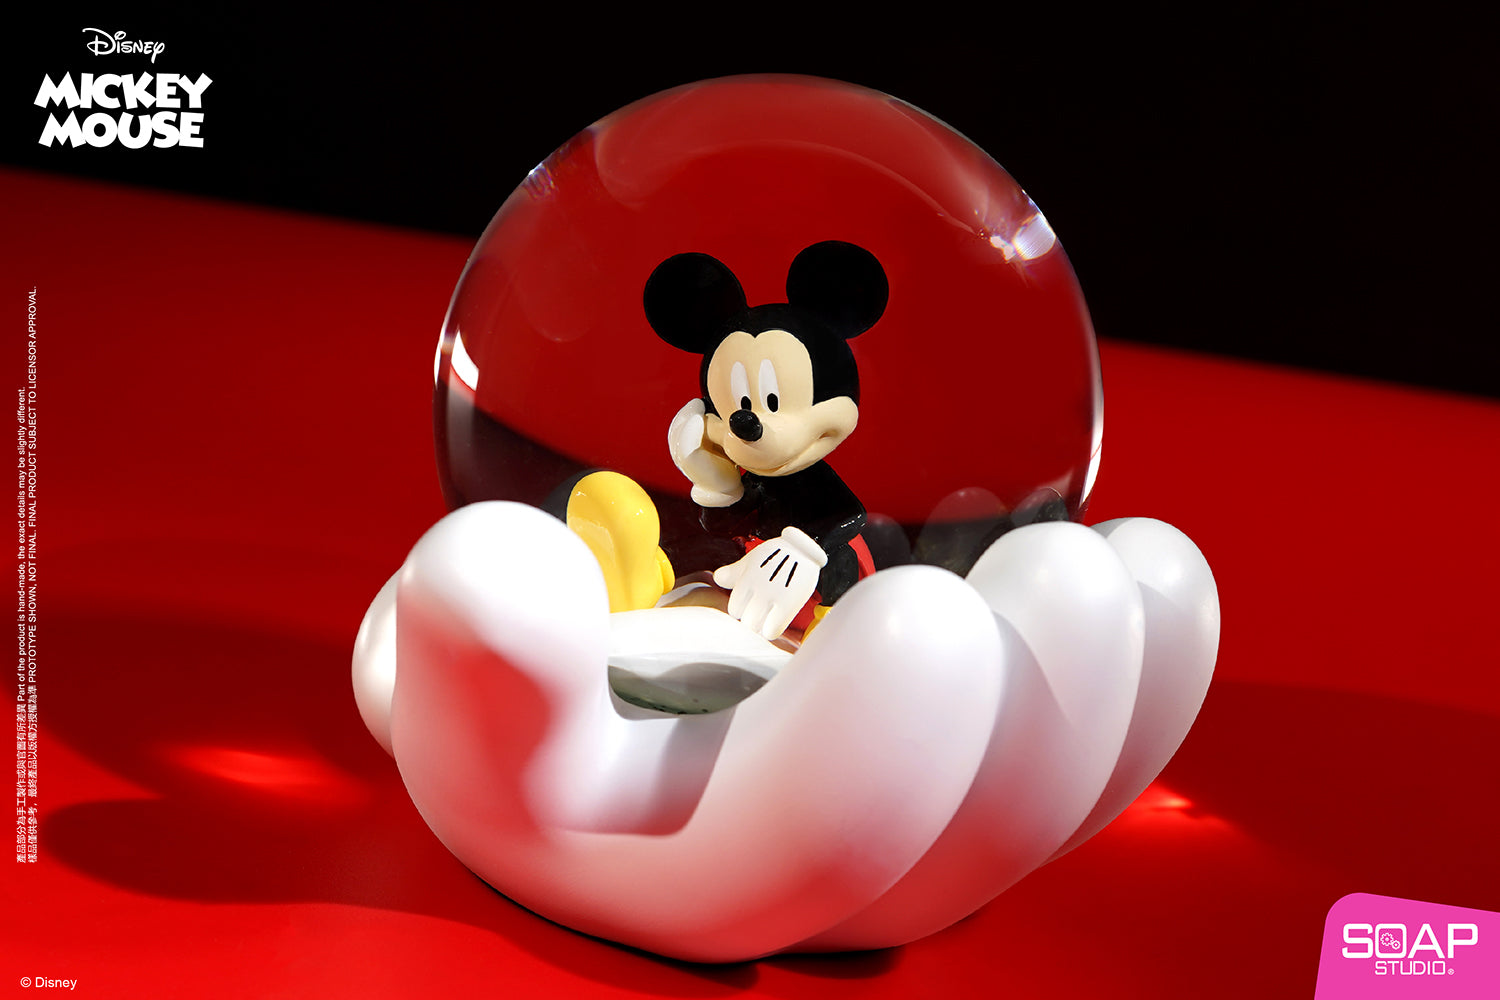 Soap Studio DY308 Mickey Mouse Magic Bubble Snow Globe